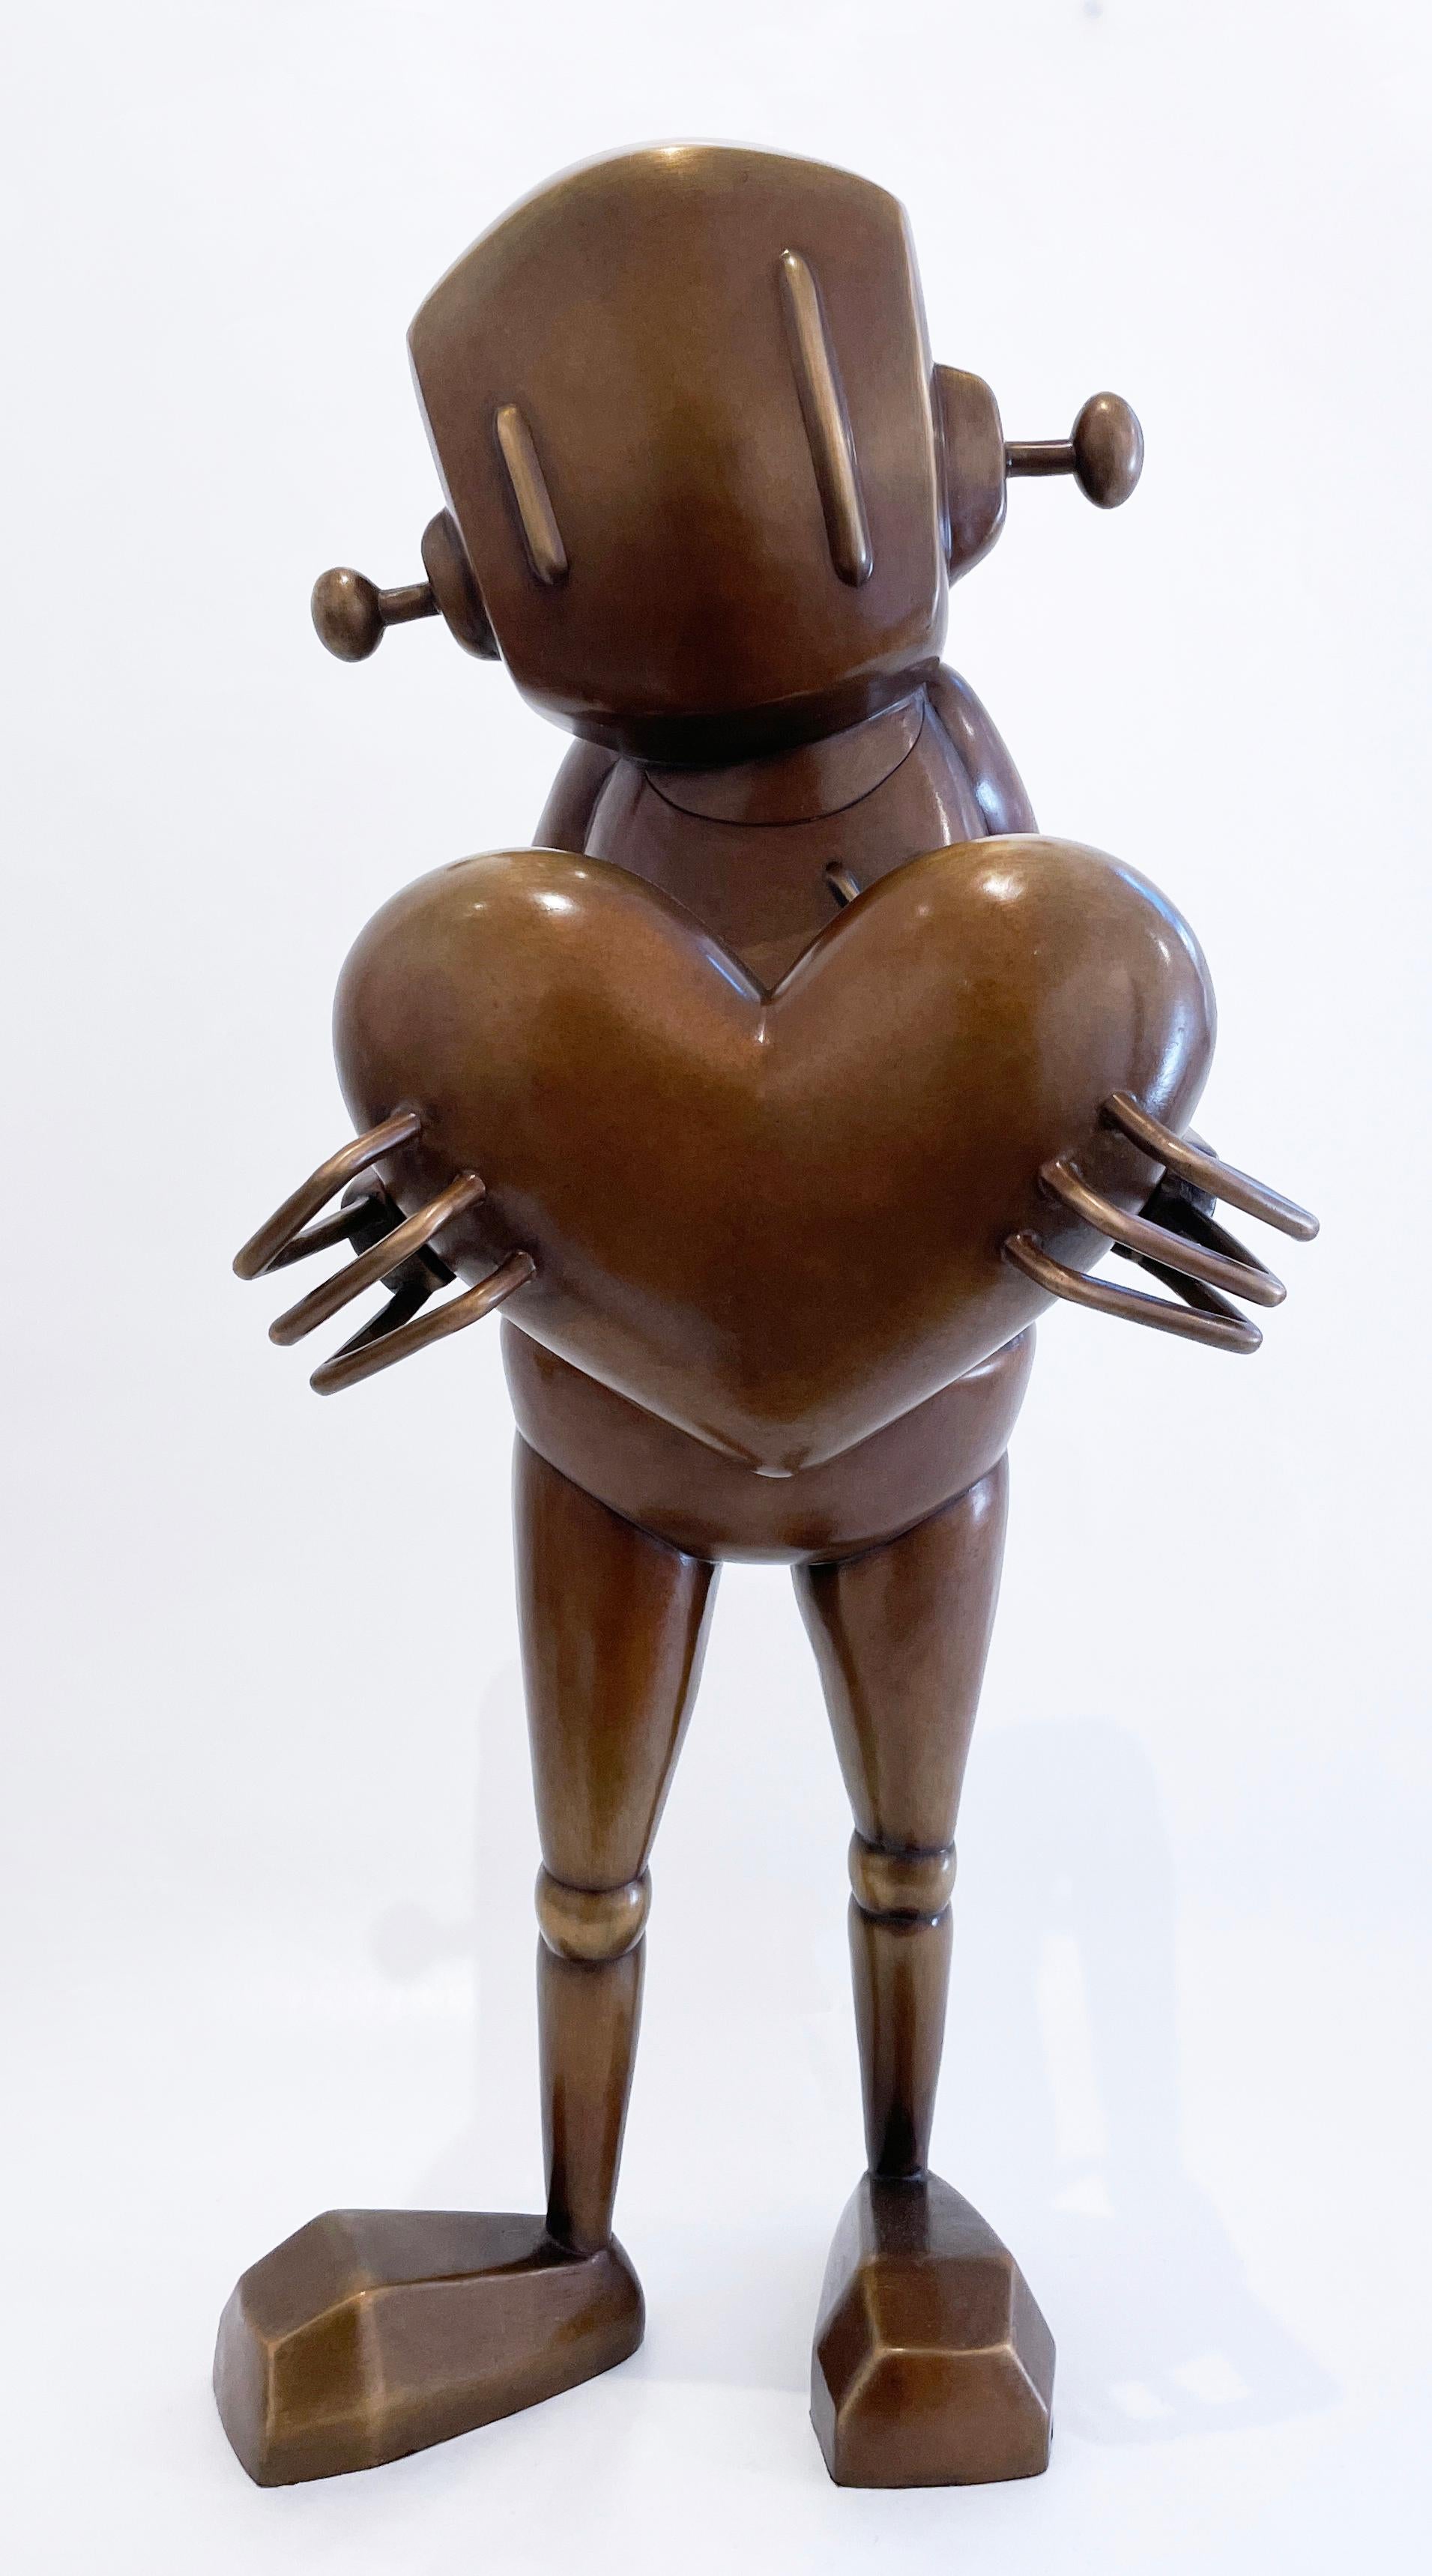 For Giving von Chris RWK, Bronzeskulptur, Straßenkunst-Roboter mit Herz